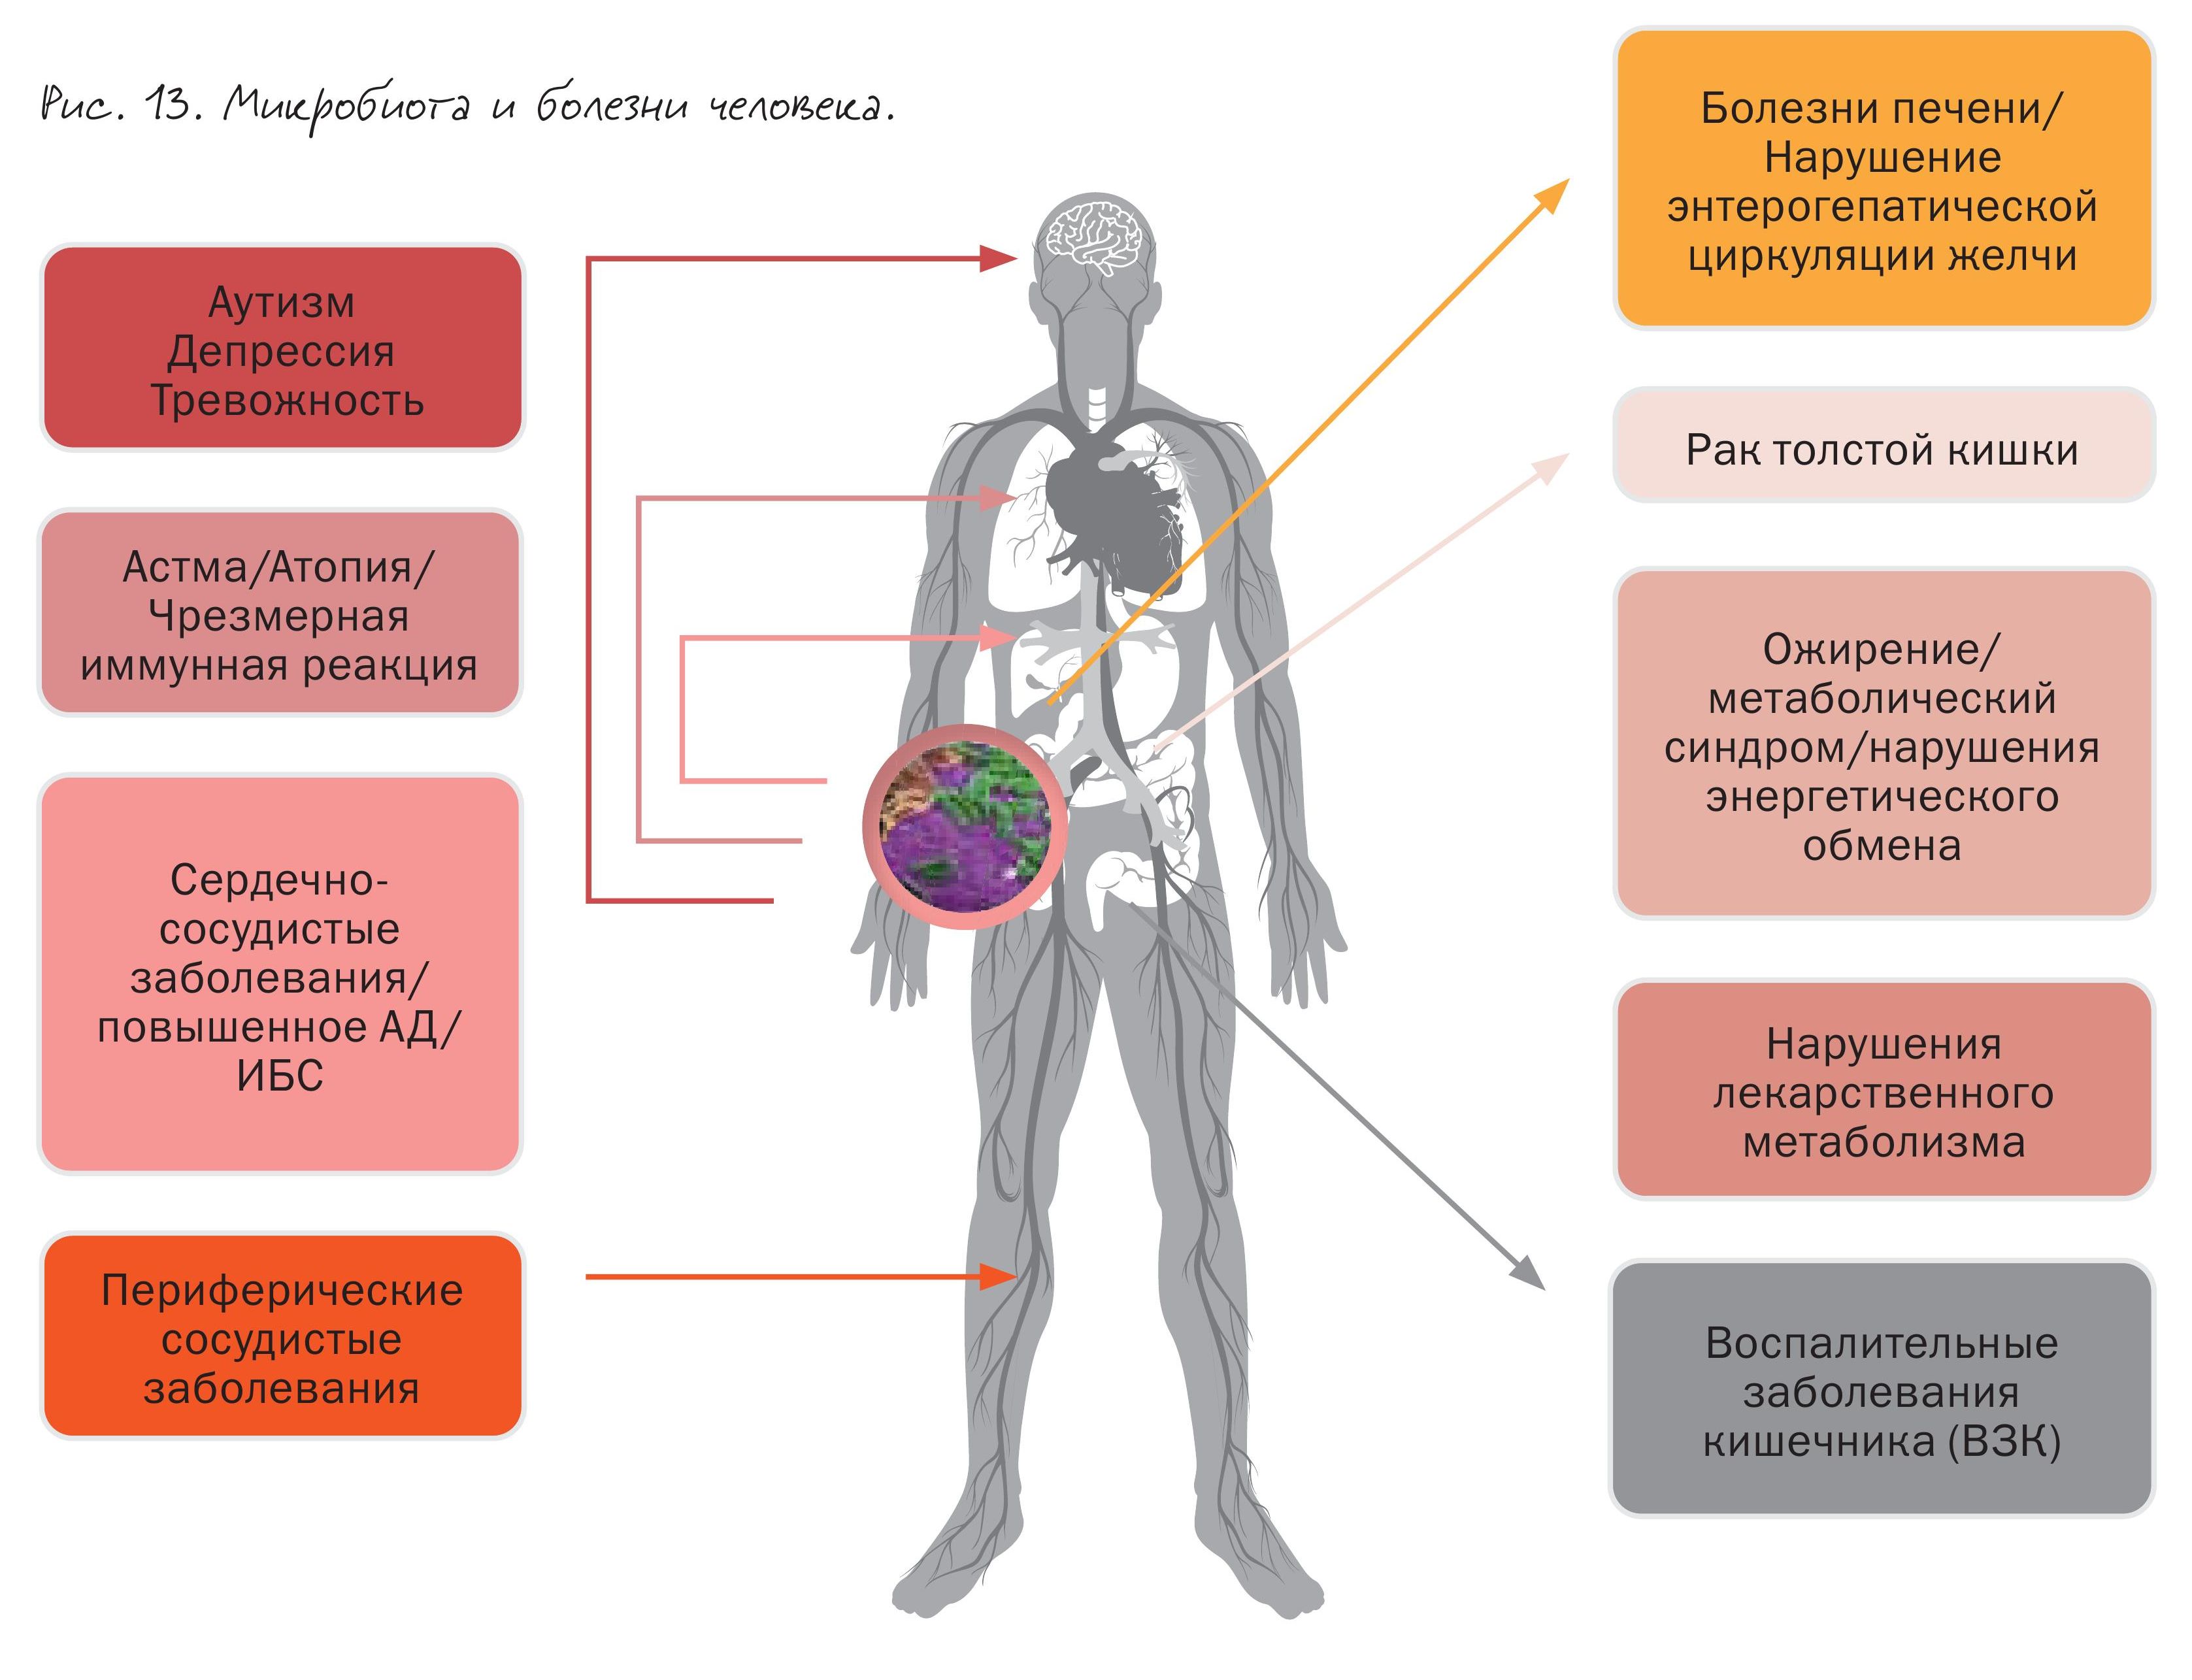 Состав микрофлоры кишечника определяет сердечно-сосудистый статус